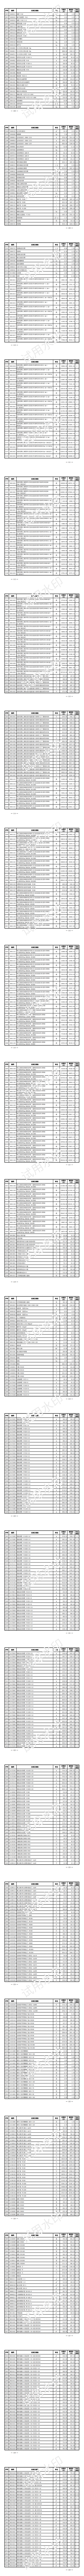 上海水务工程价格信息（2023年11月第十期）_05.png